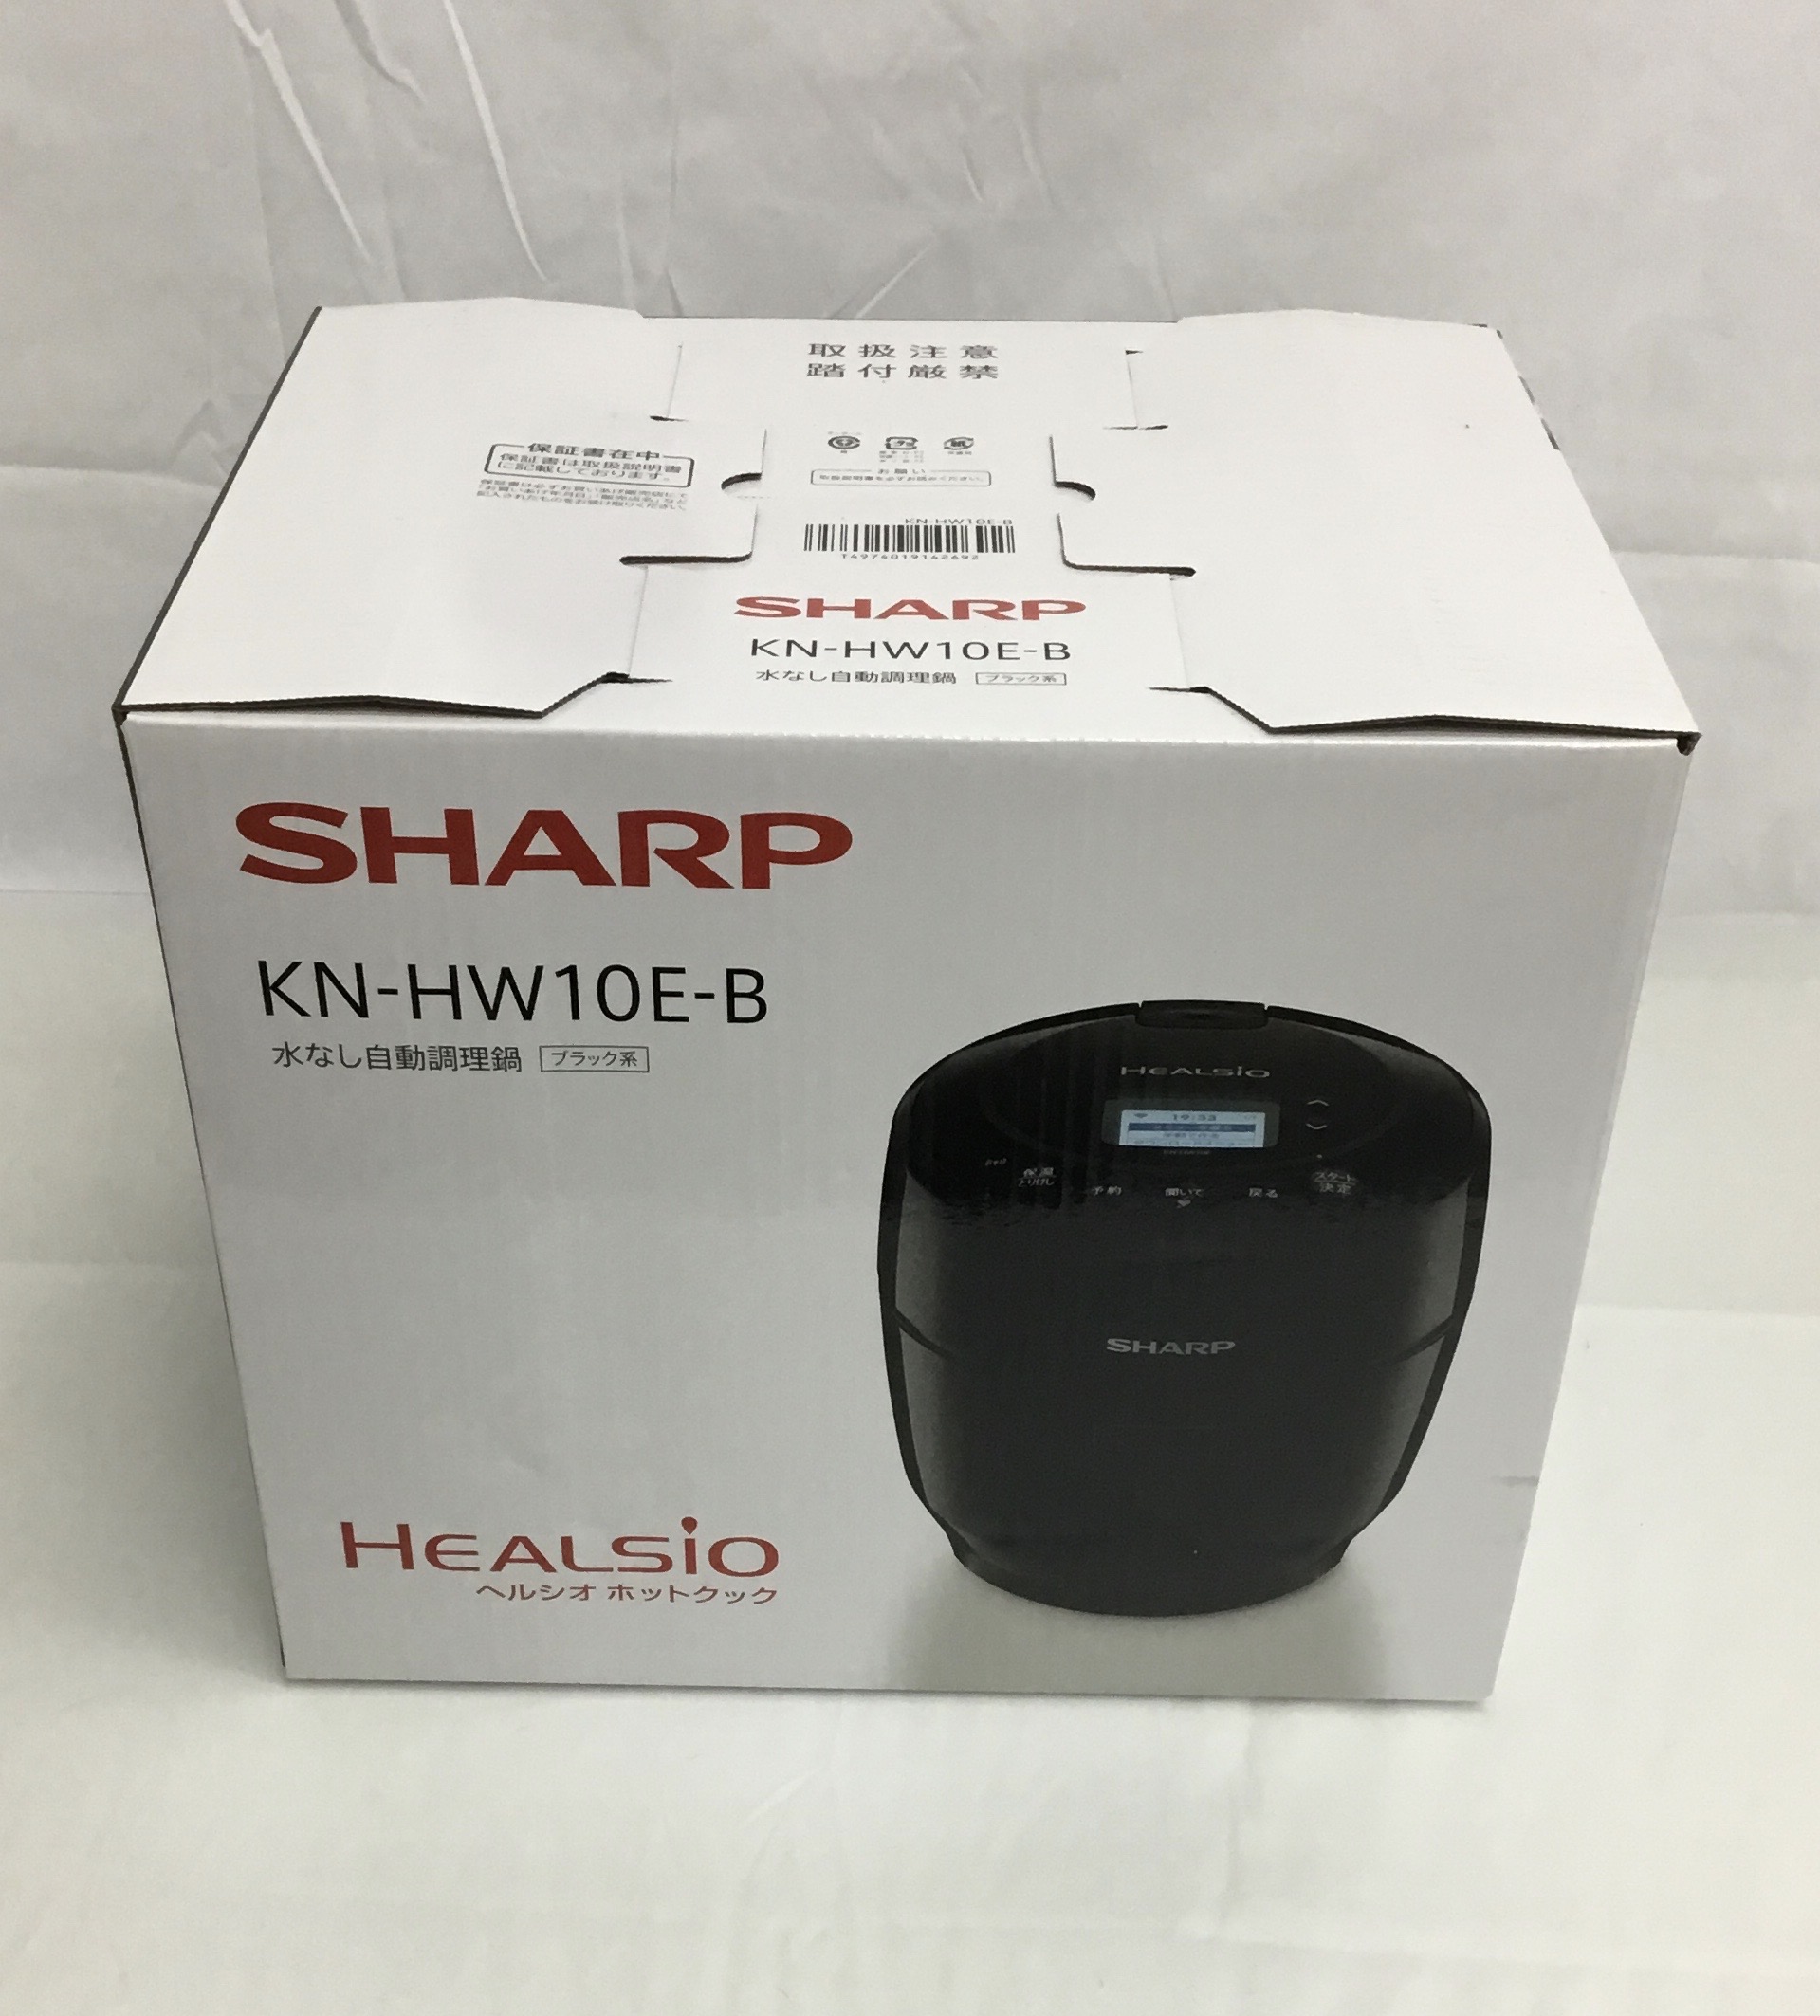 SHARP/シャープ ヘルシオ ホットクック KN-HW10E-B [ブラック系] 調理